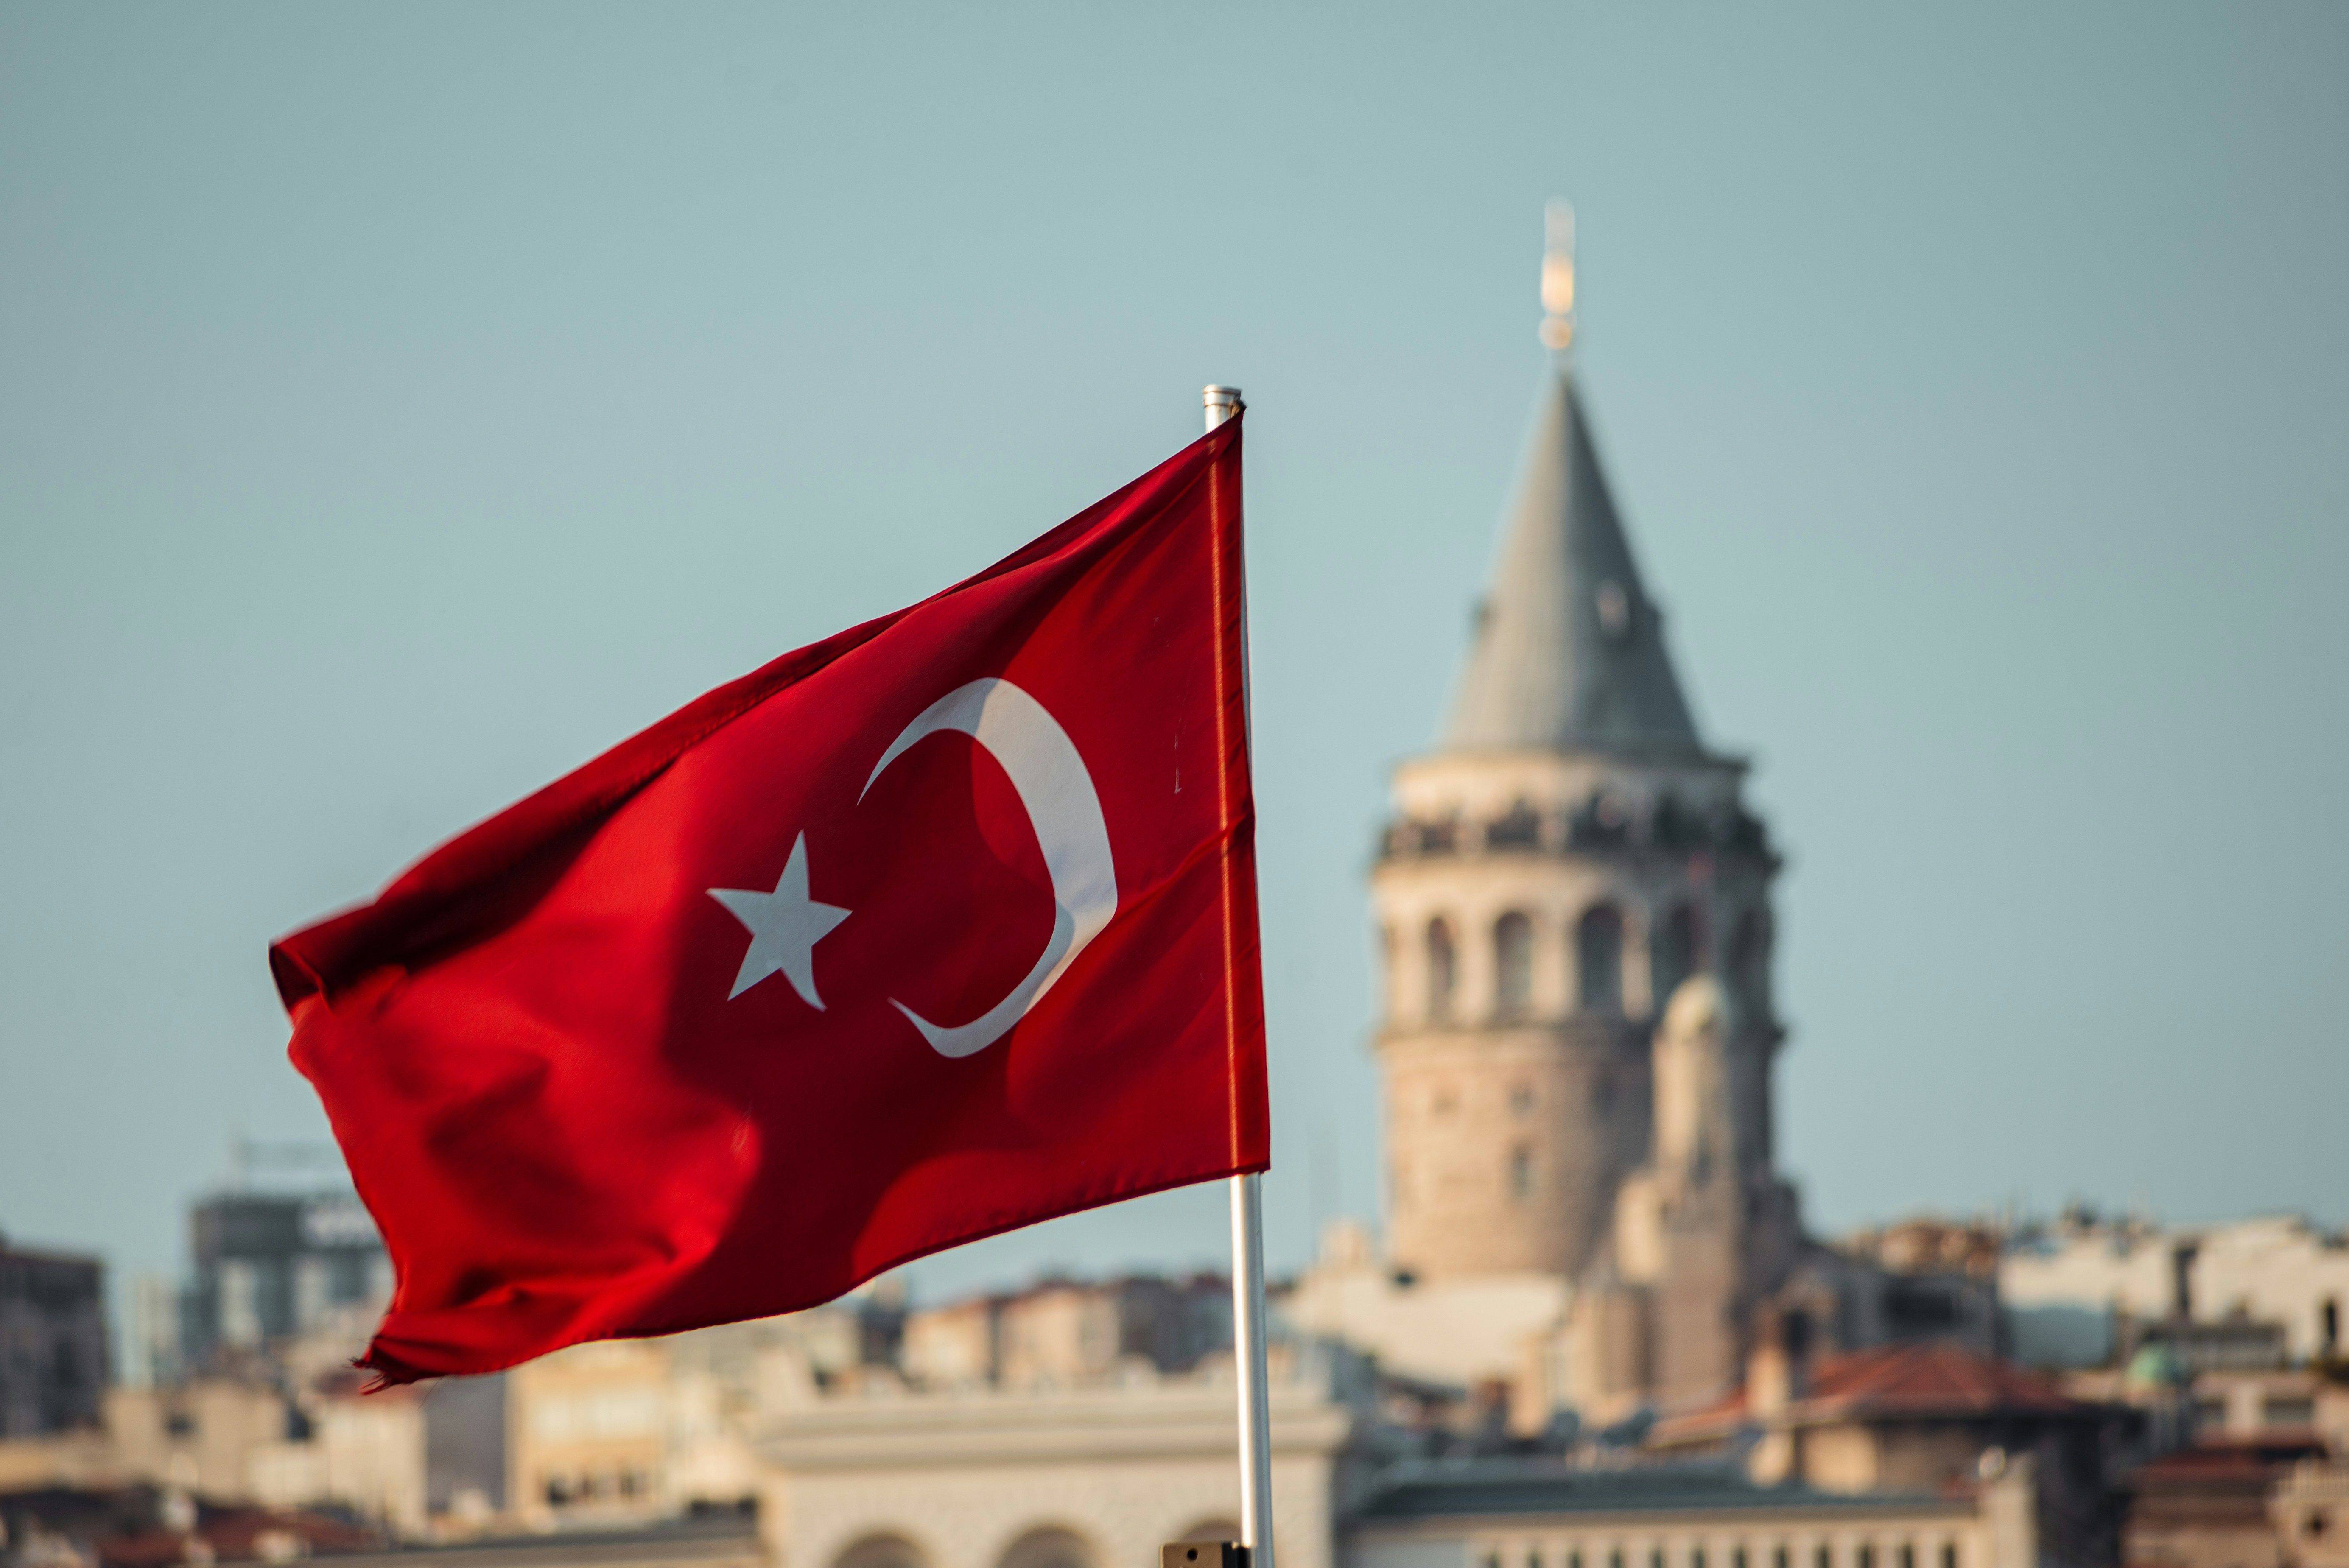 Банковские переводы из России заблокированы - Турция отказалась их разблокировать - Экономика